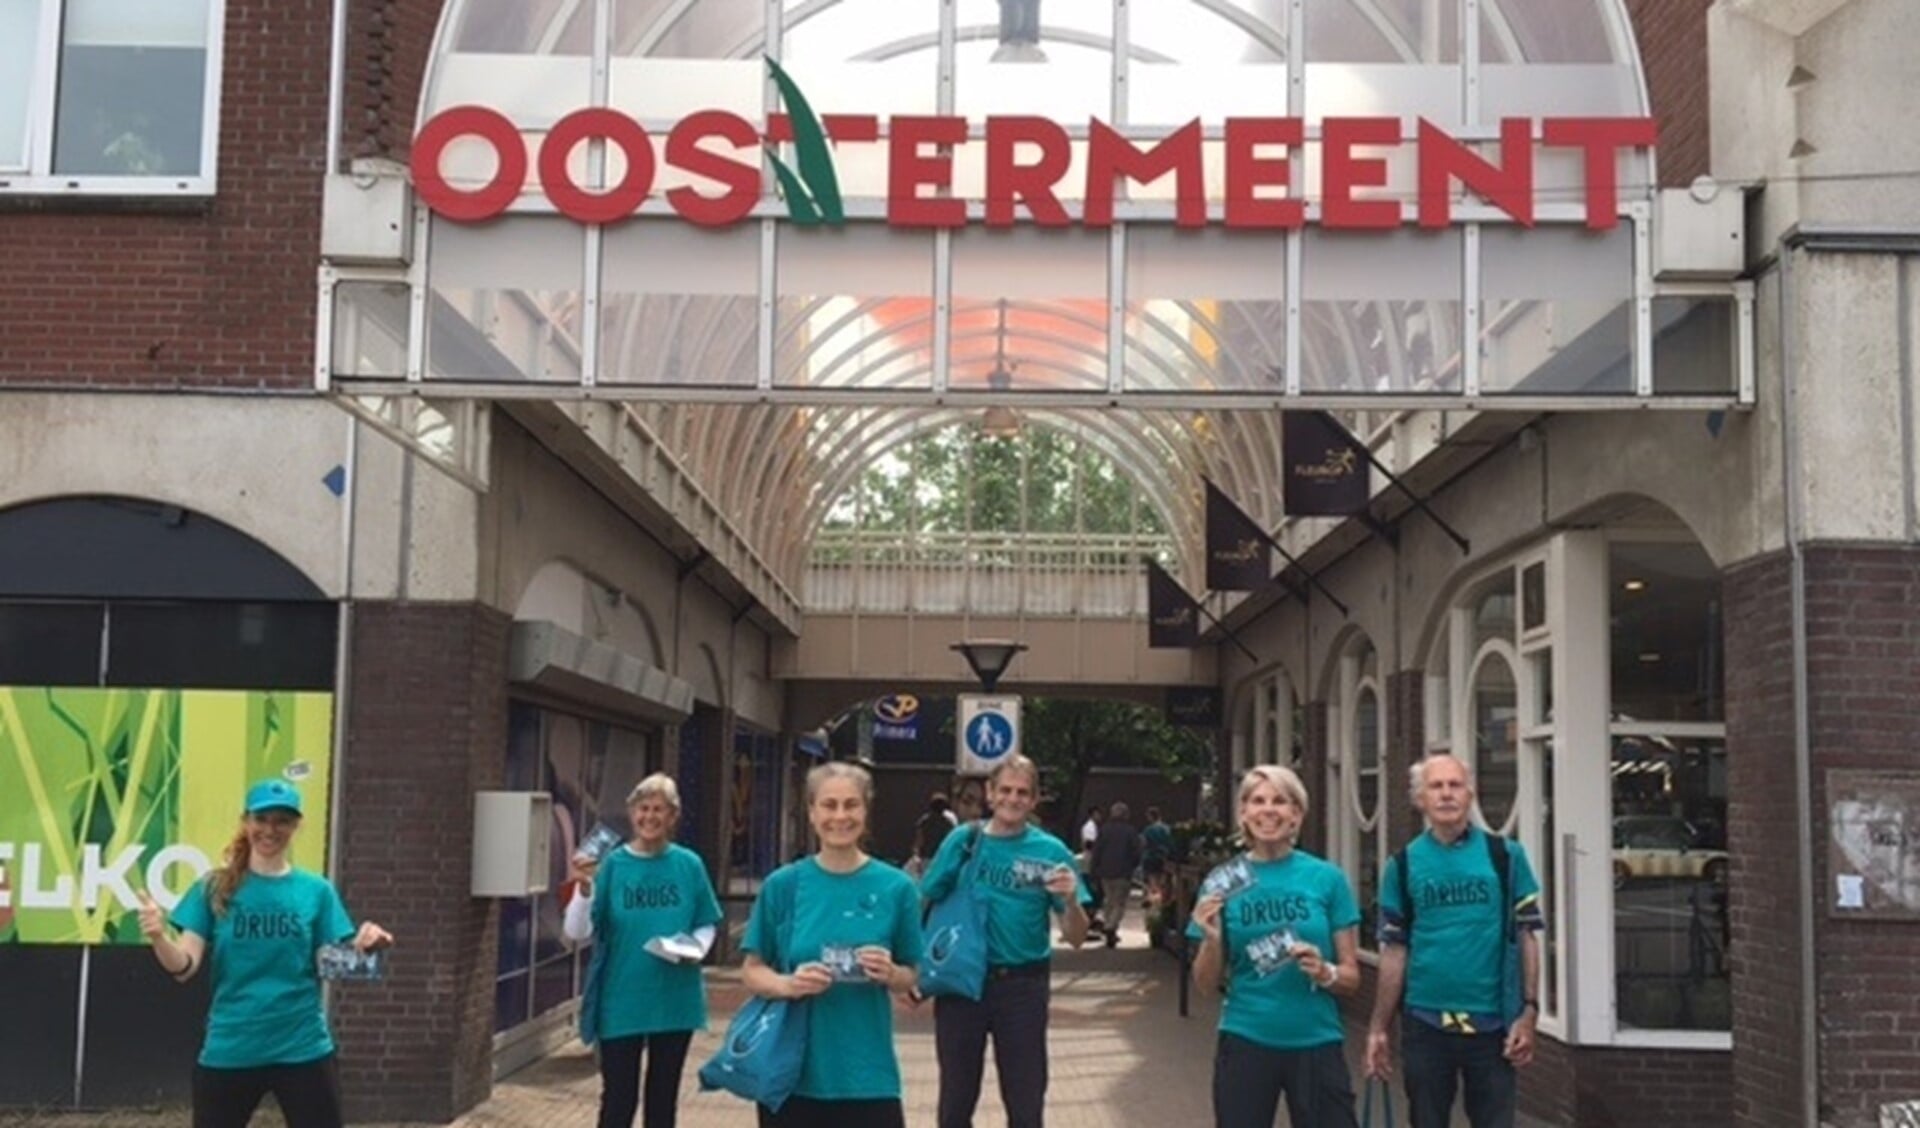 Het team dat afgelopen zaterdag flyerde in Winkelcentrum Oostermeent.